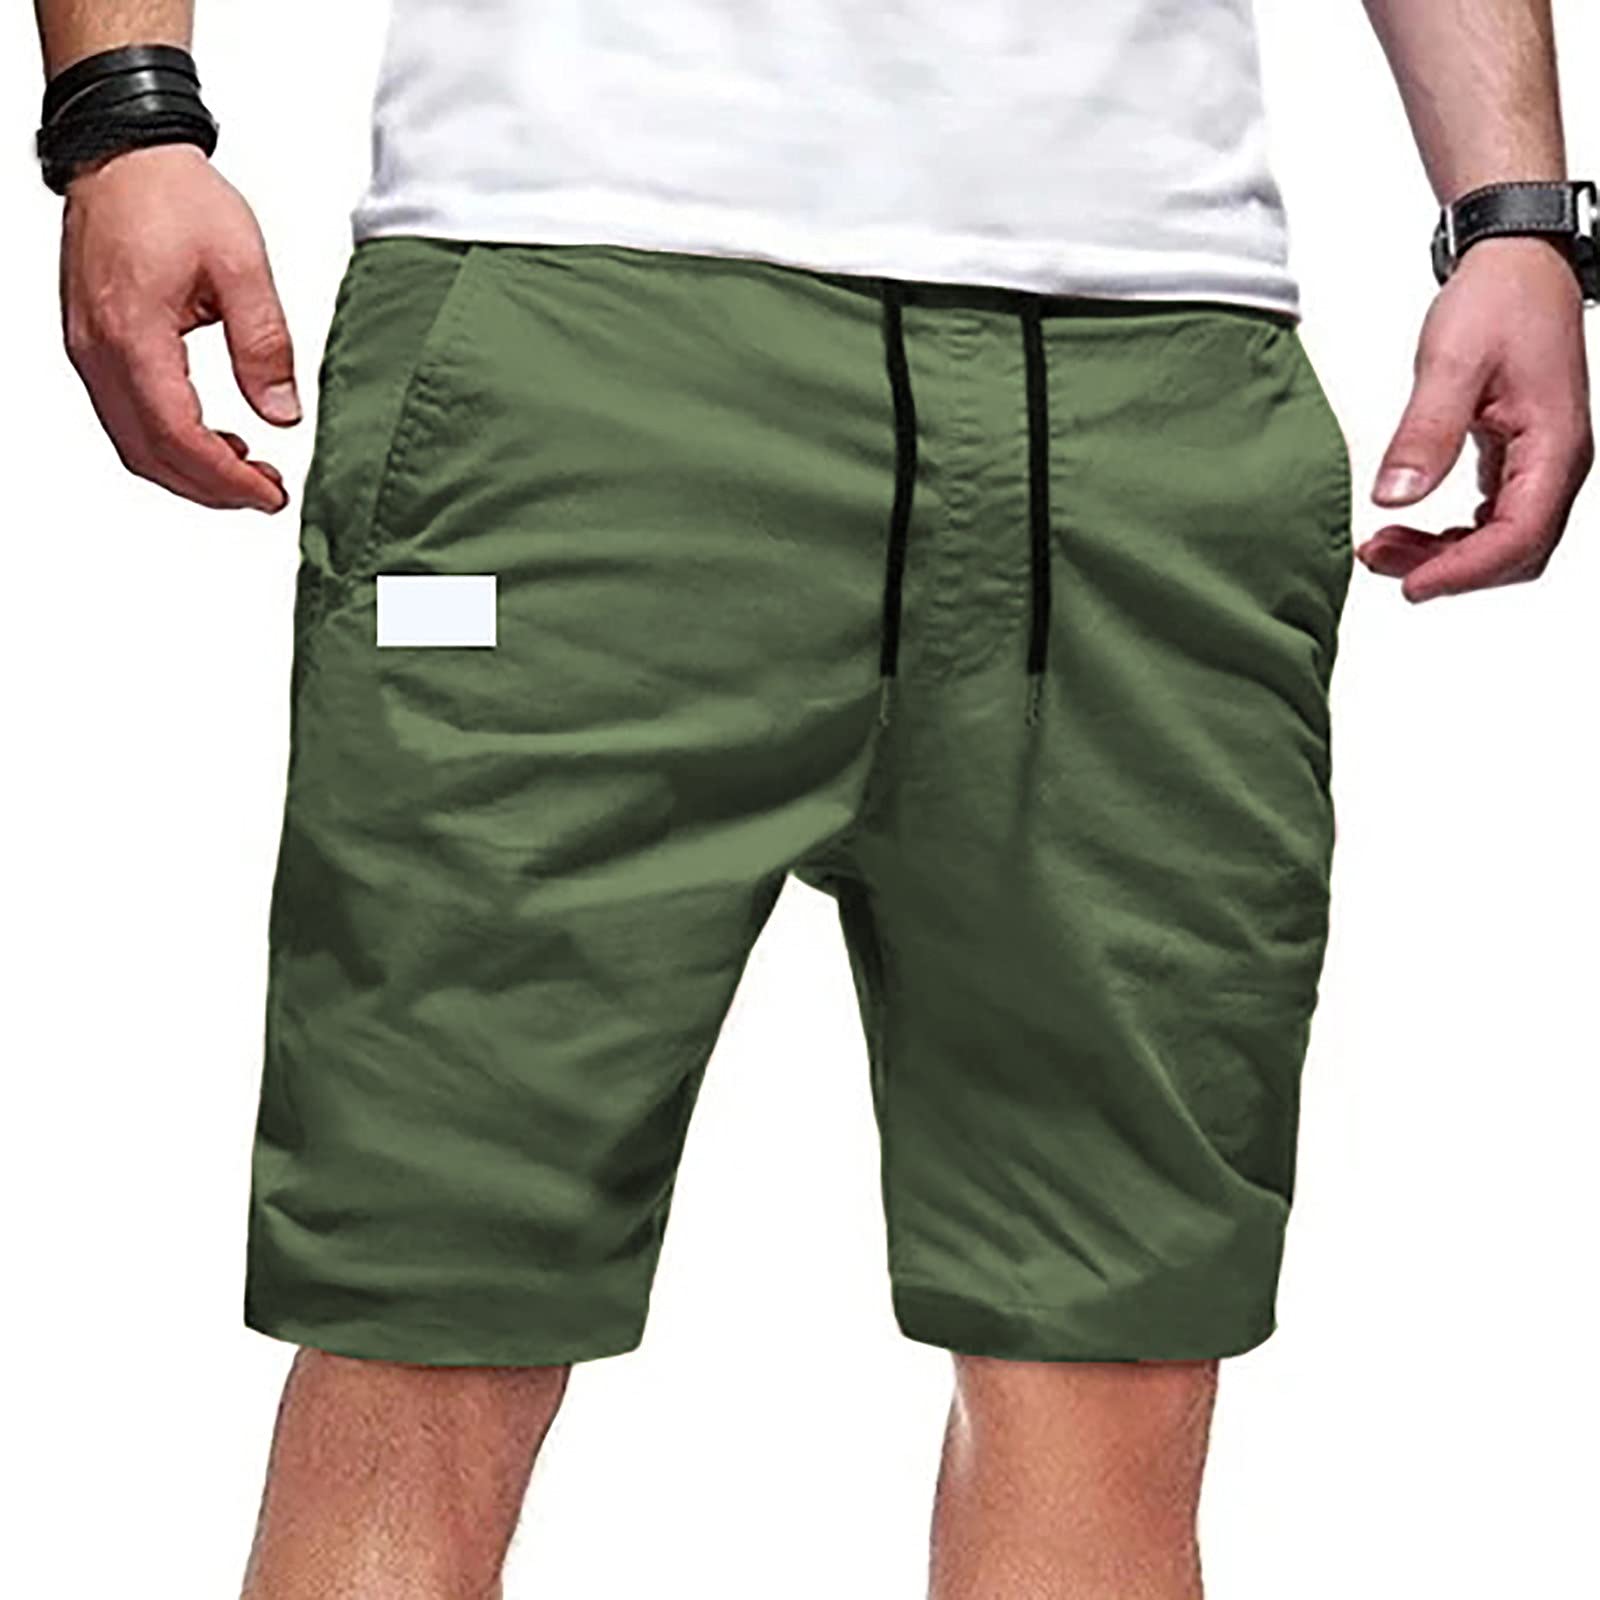 kbndieu Men's Cargo Shorts Multi Pockets Zipper Golf Shorts